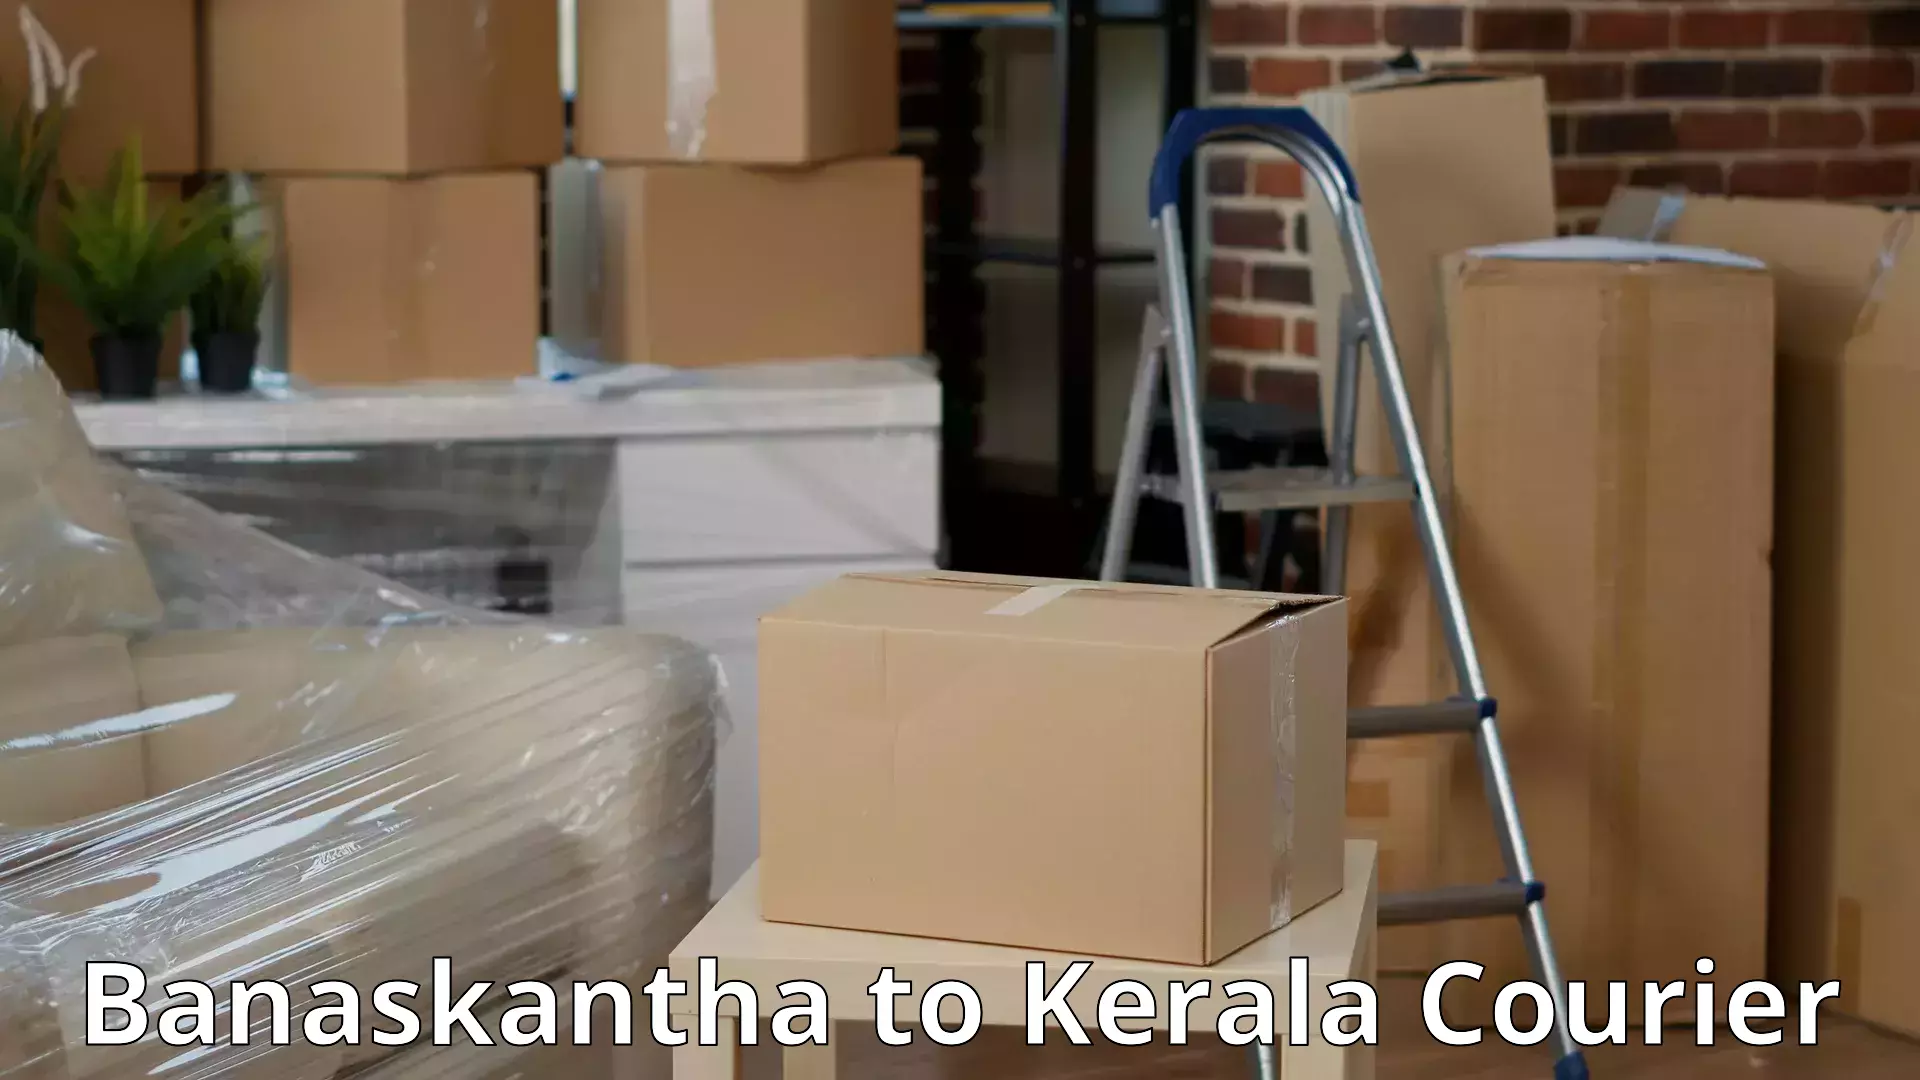 Furniture moving experts Banaskantha to Kalanjoor